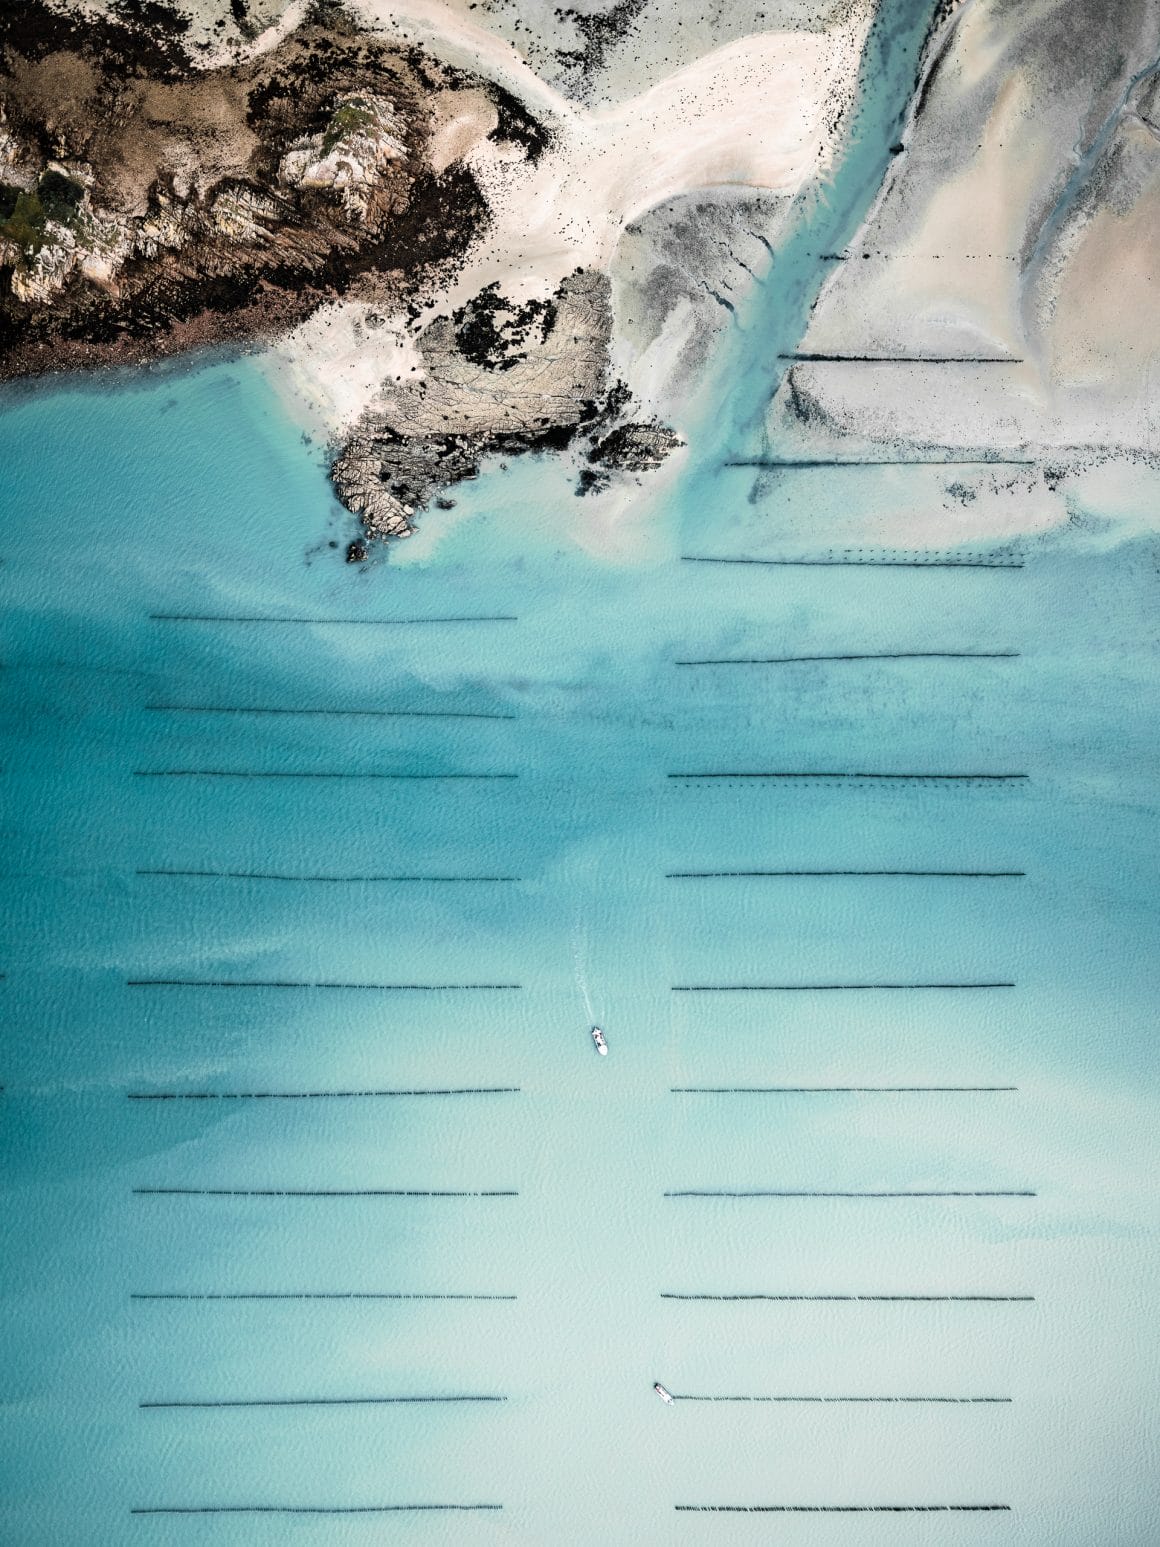 Lignes espacées d'ostréiculture, avec bras de mer donnant sur une plage sauvage. Jeu du blanc du sable, en contraste avec le bleu de la mer et la texture des pans arborés.